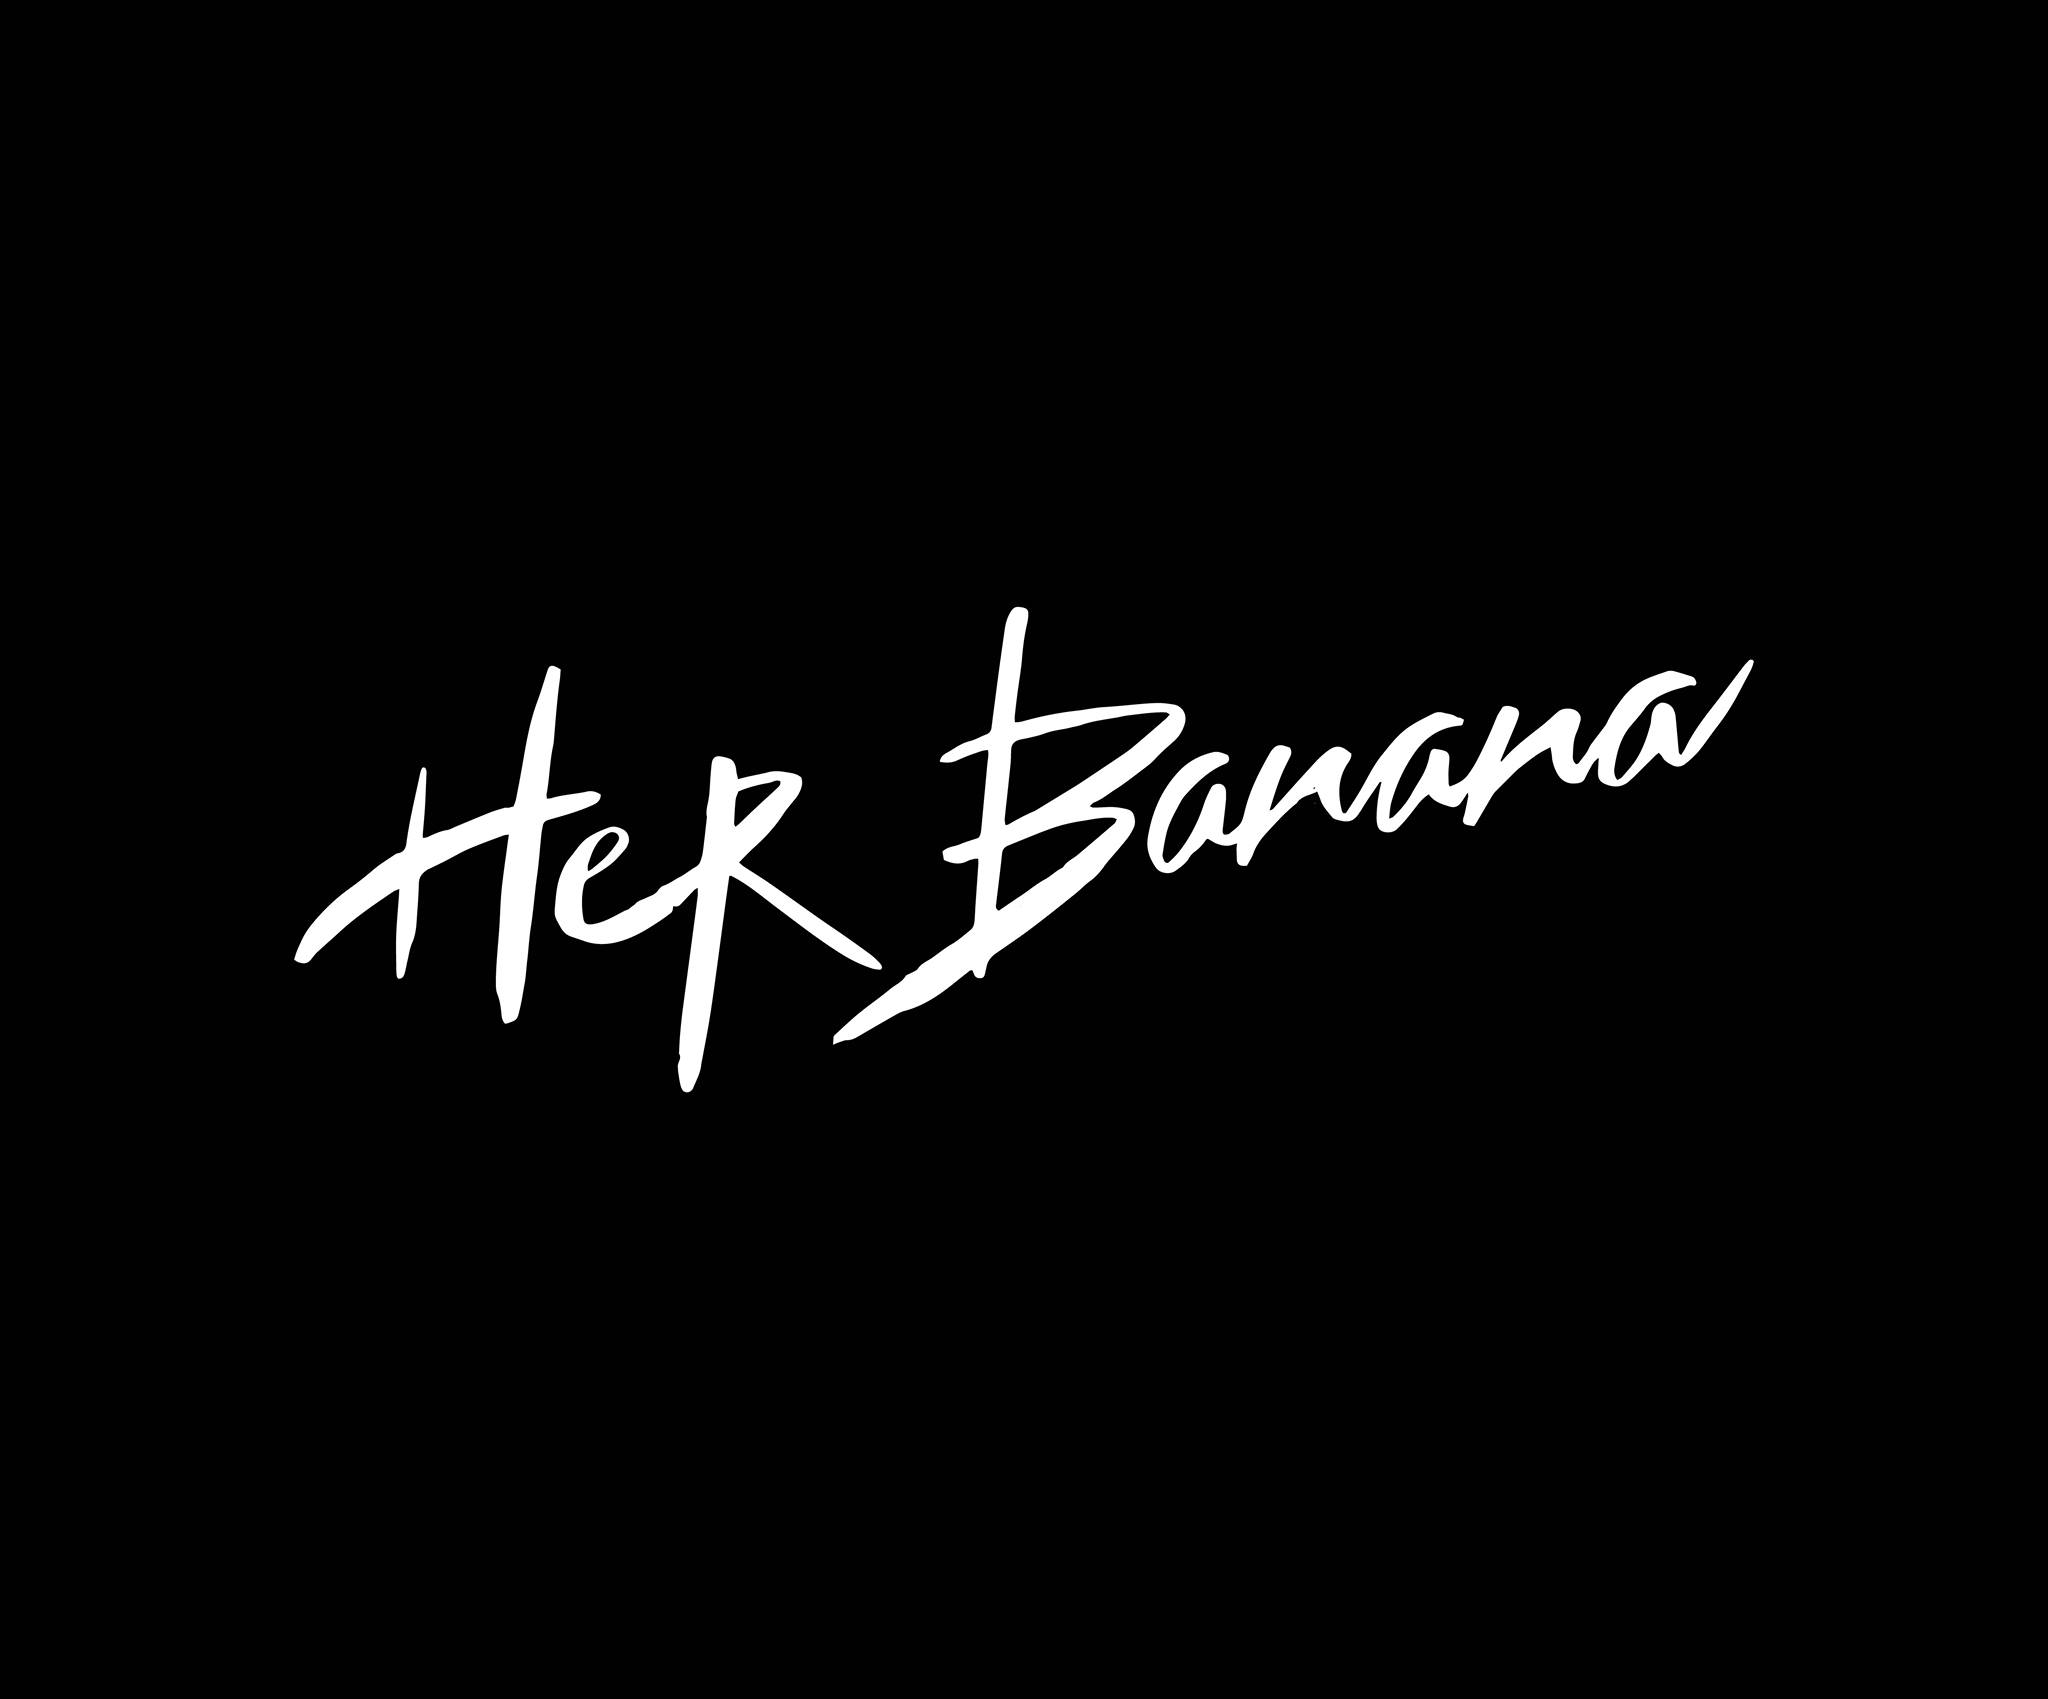 Company logo of Her Banana